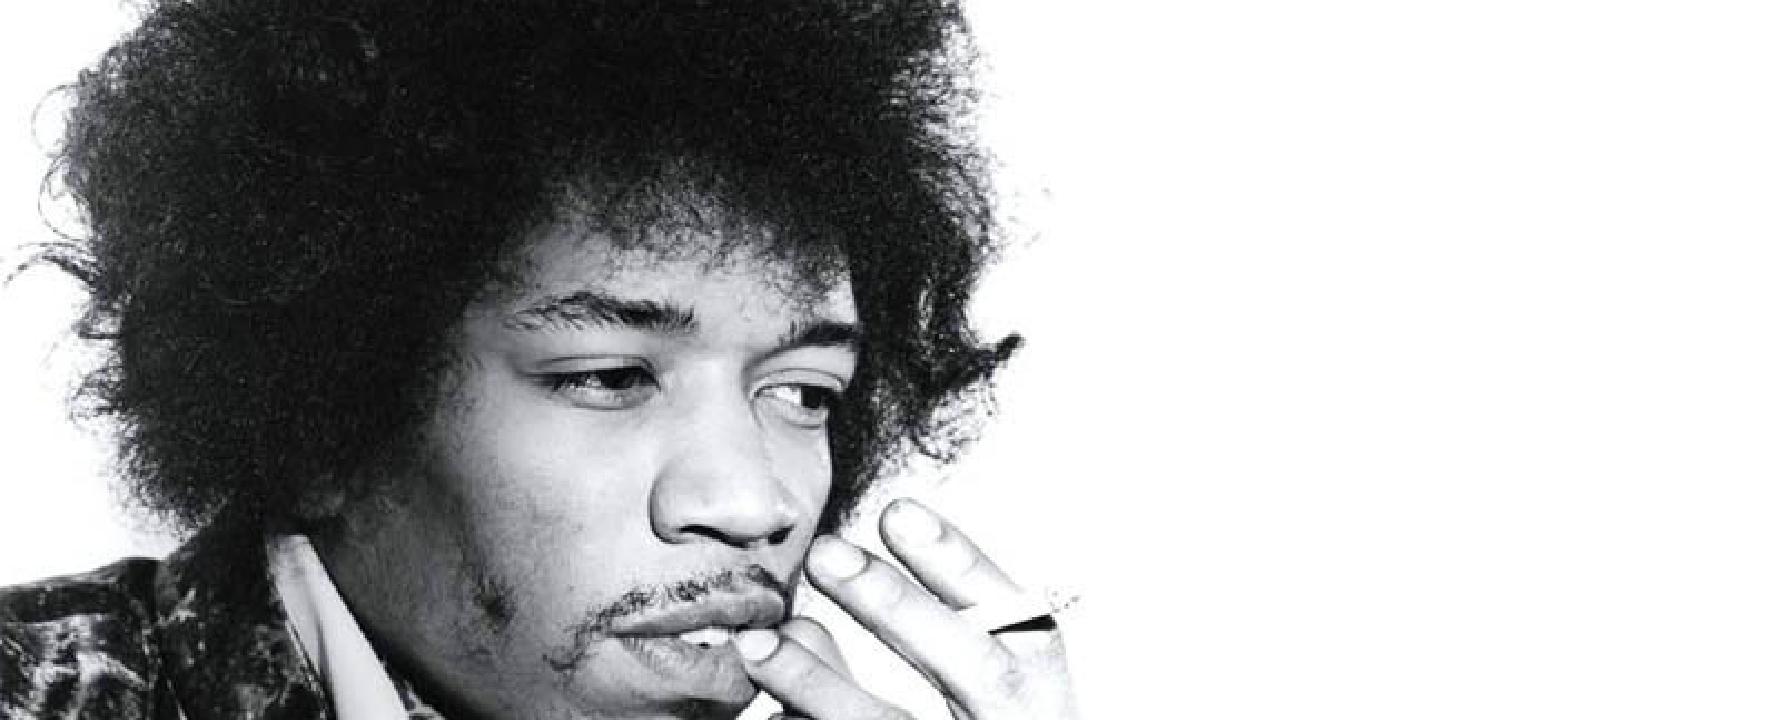 Fotografía promocional de Jimi Hendrix